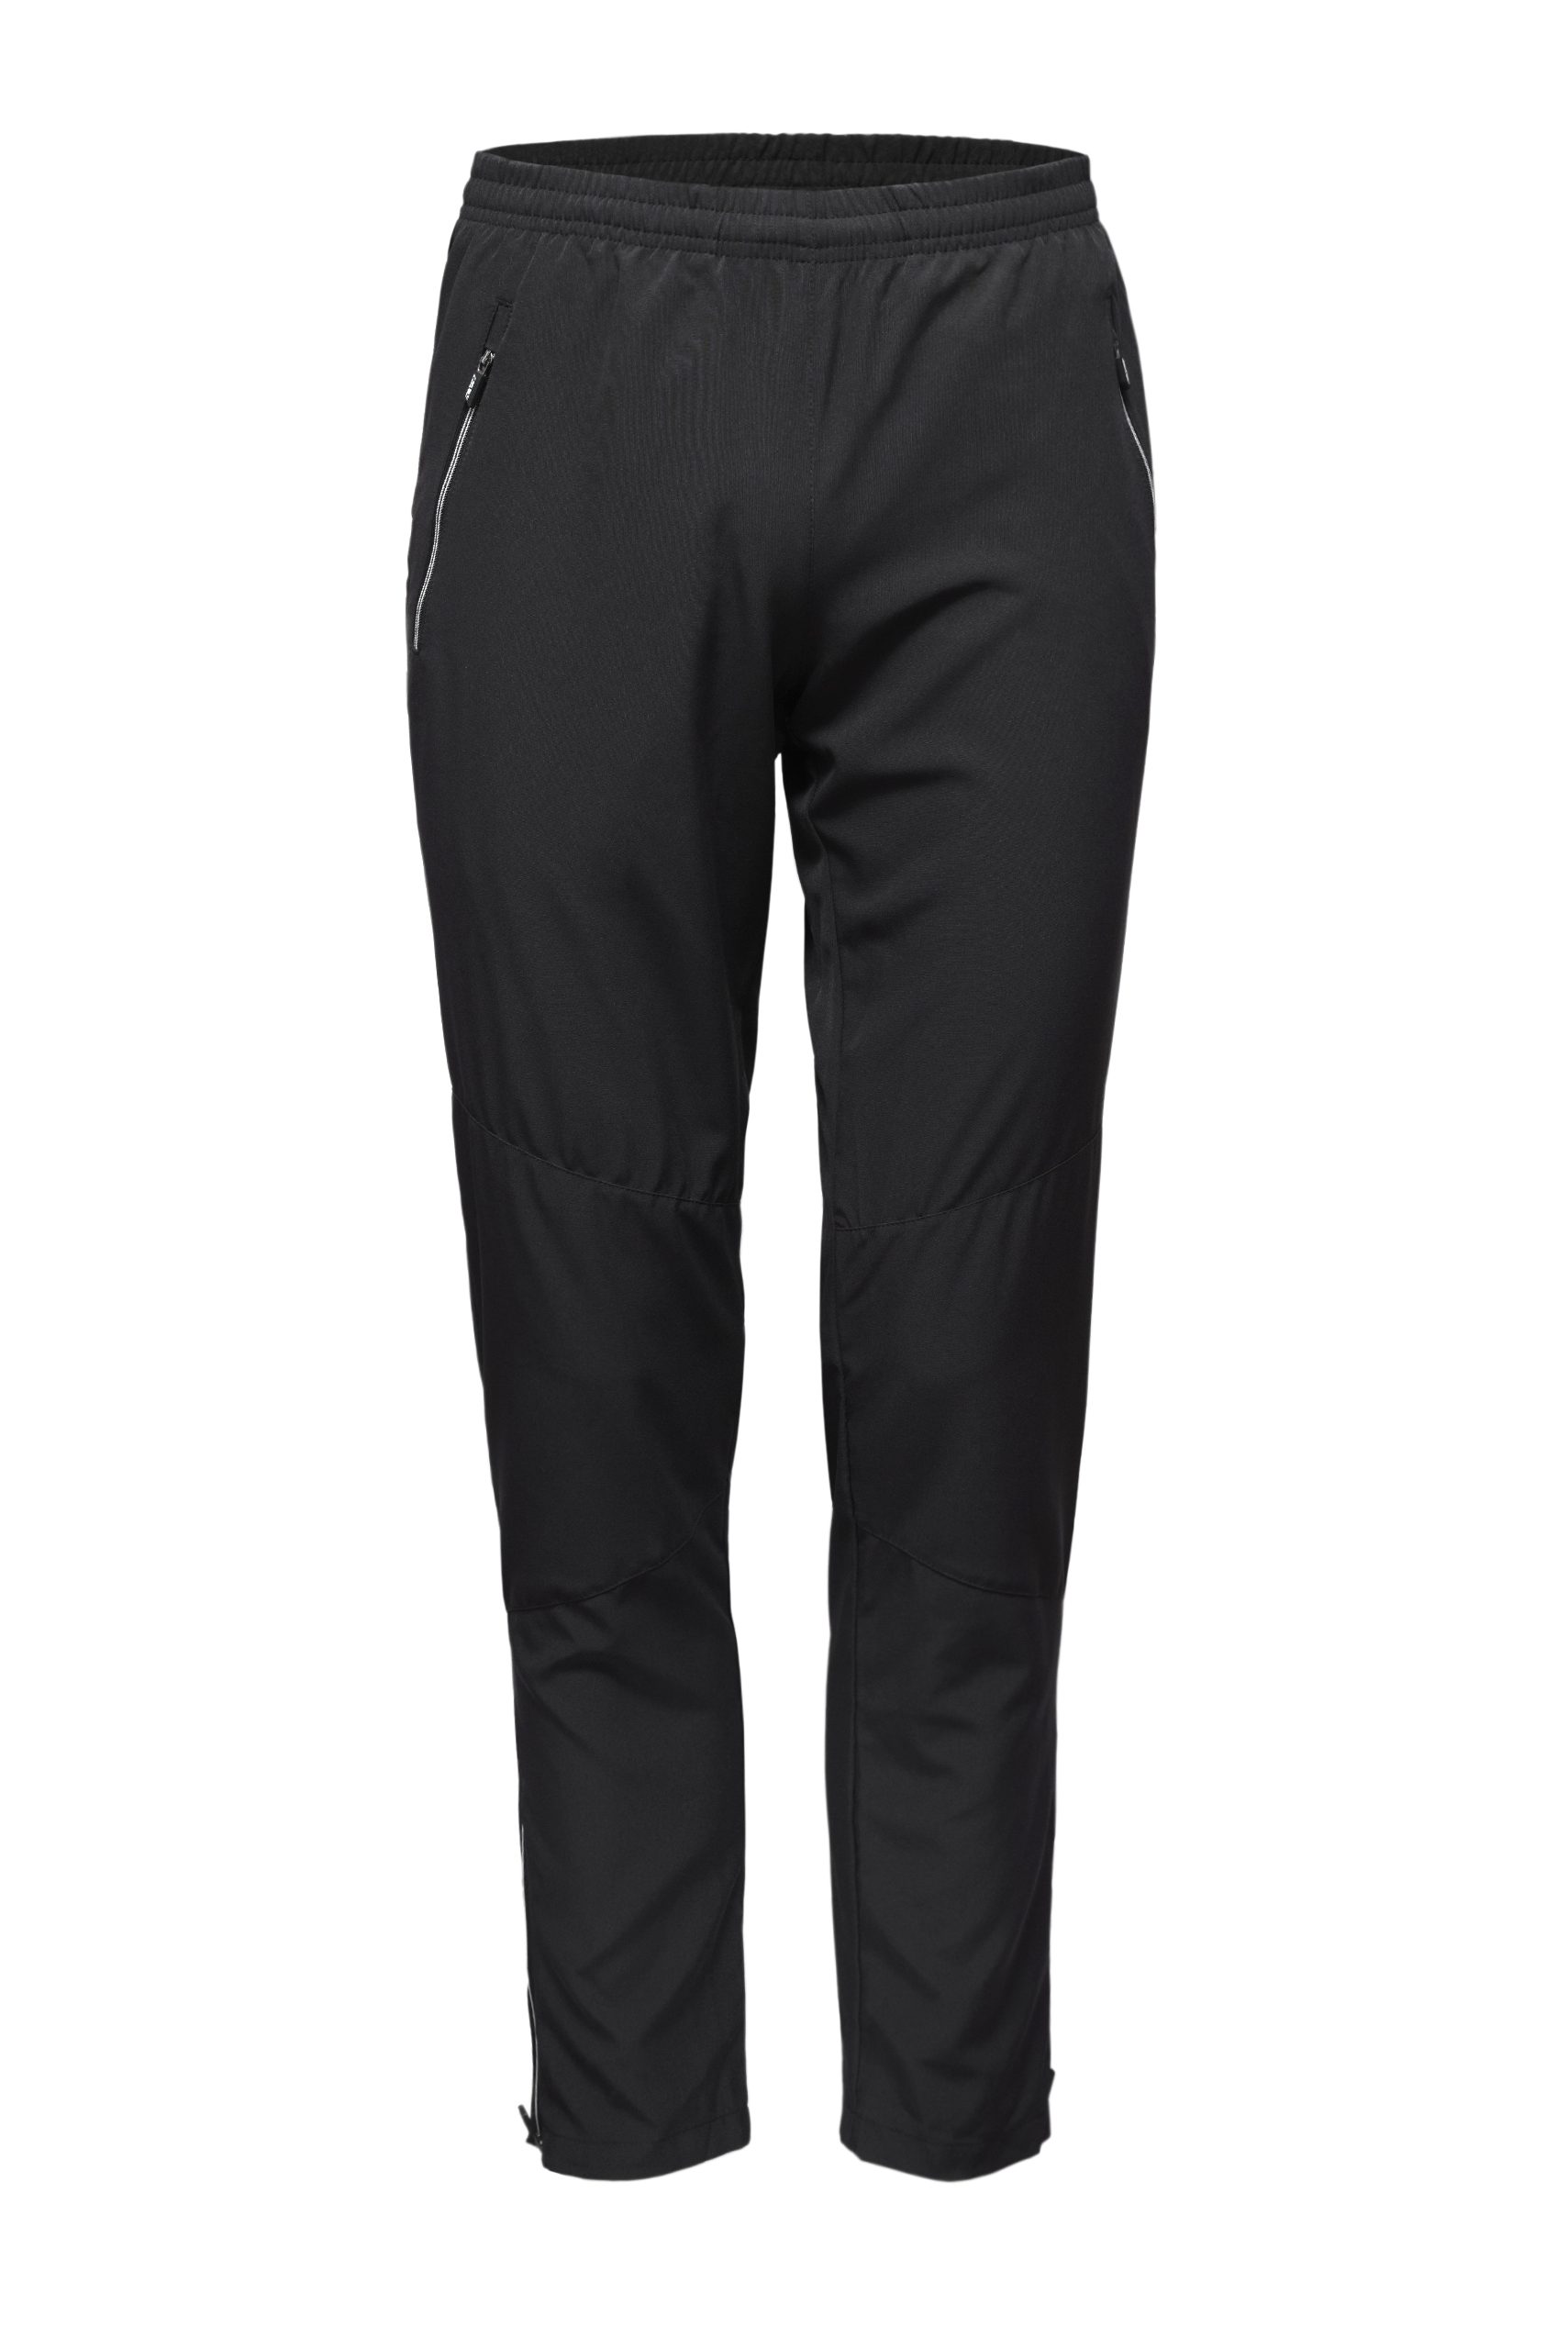 Разминочные брюки KV+ SPRINT pants man, black, 21S07.1